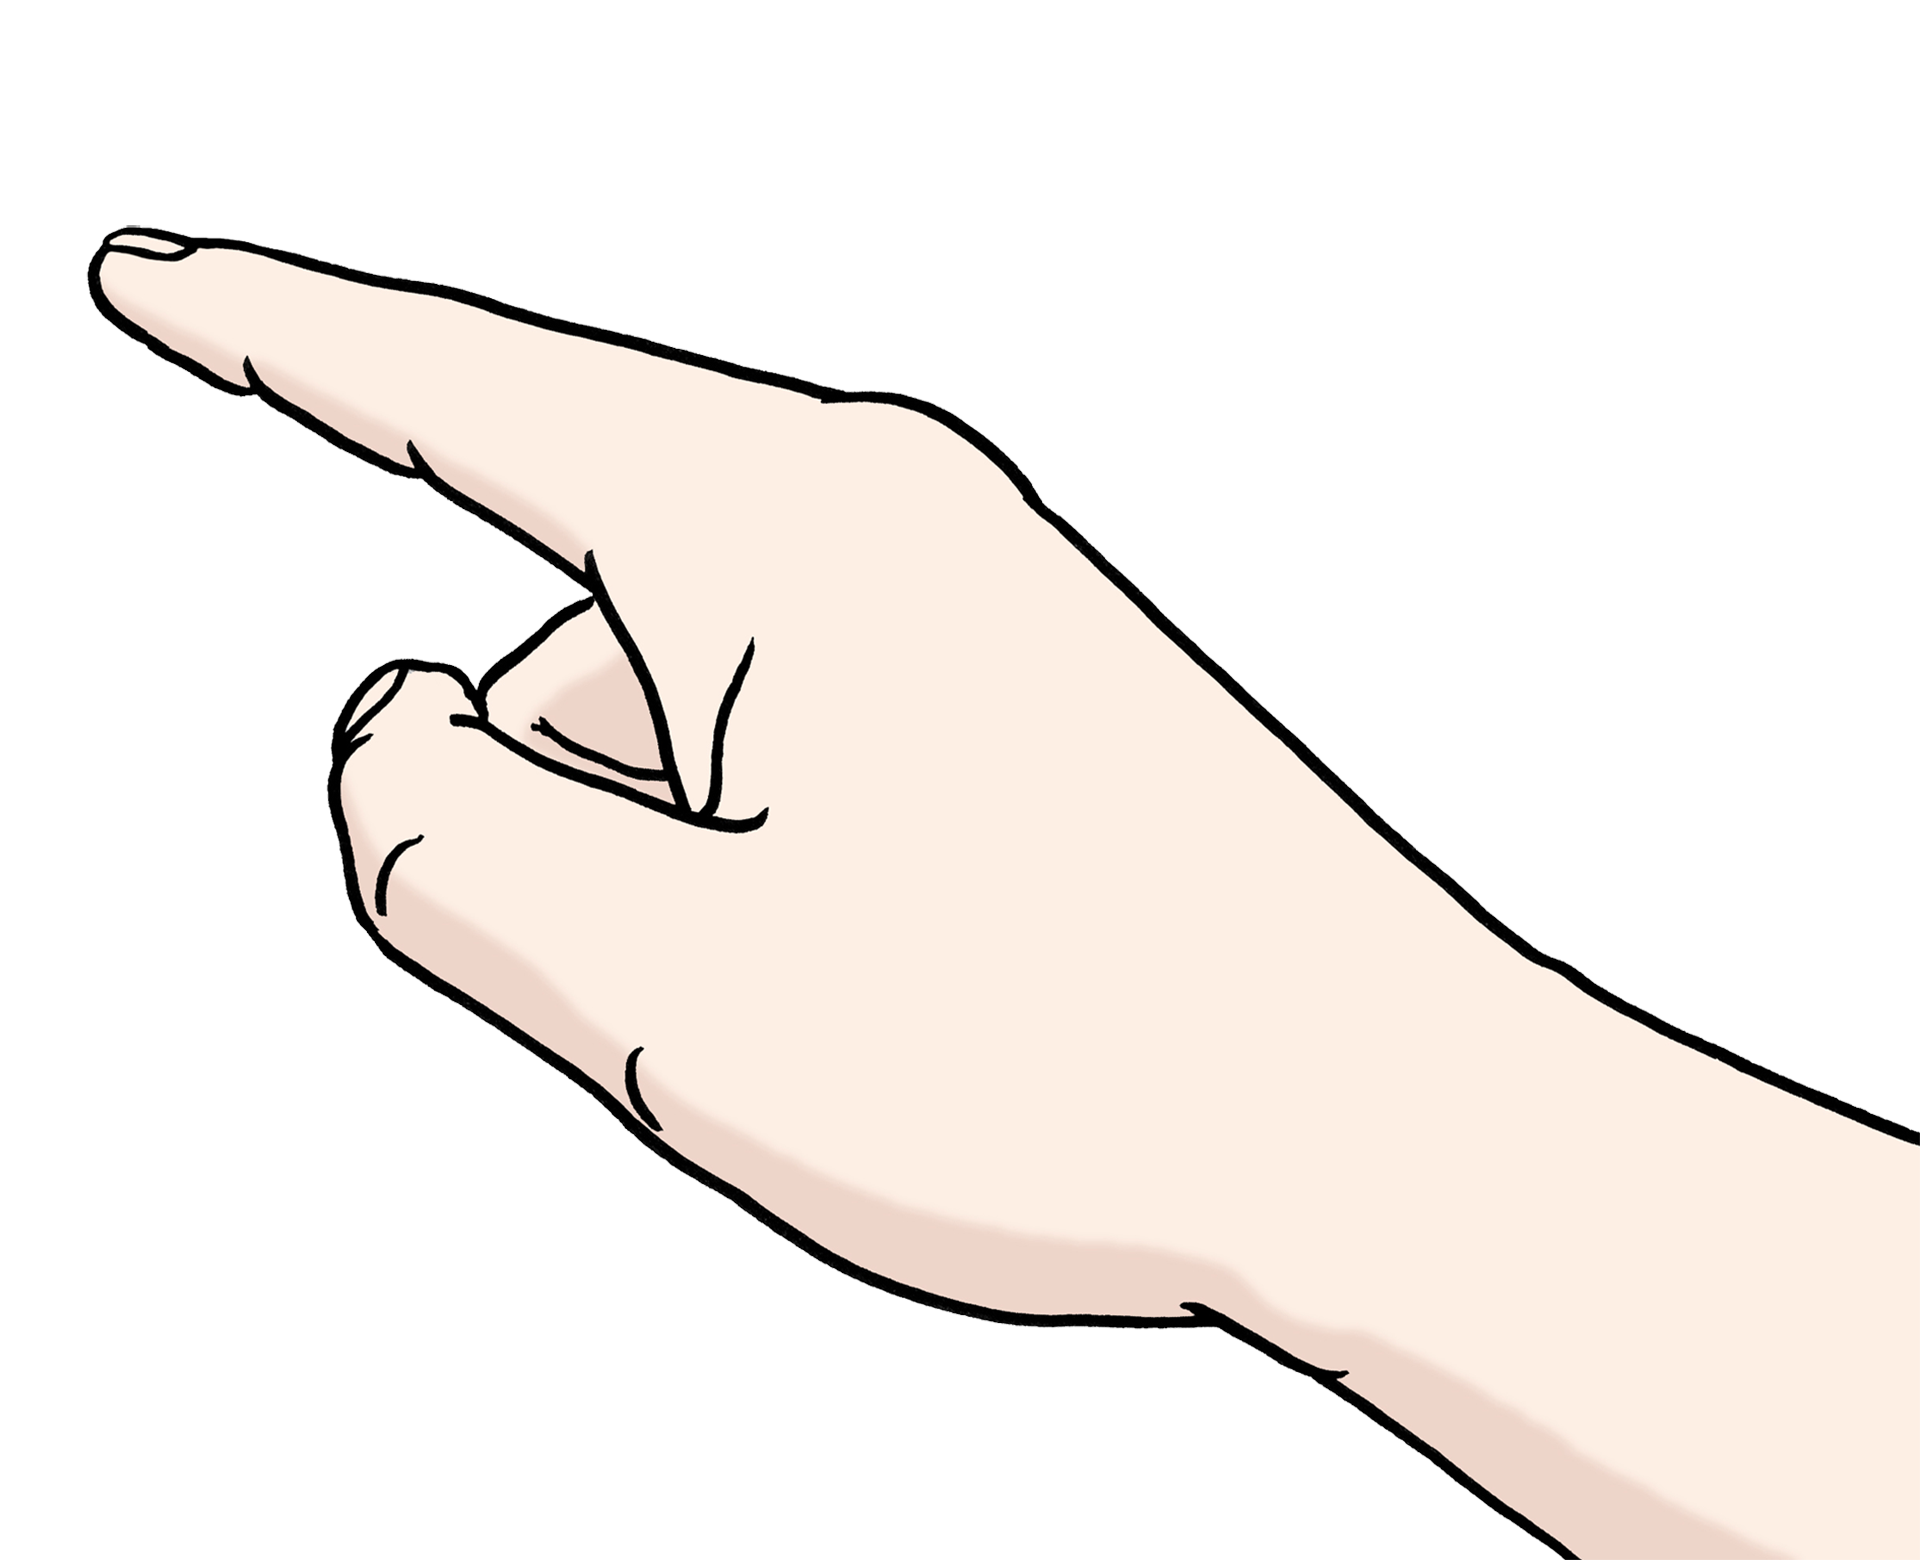 Bild zeigt eine Hand mit Zeigefinger